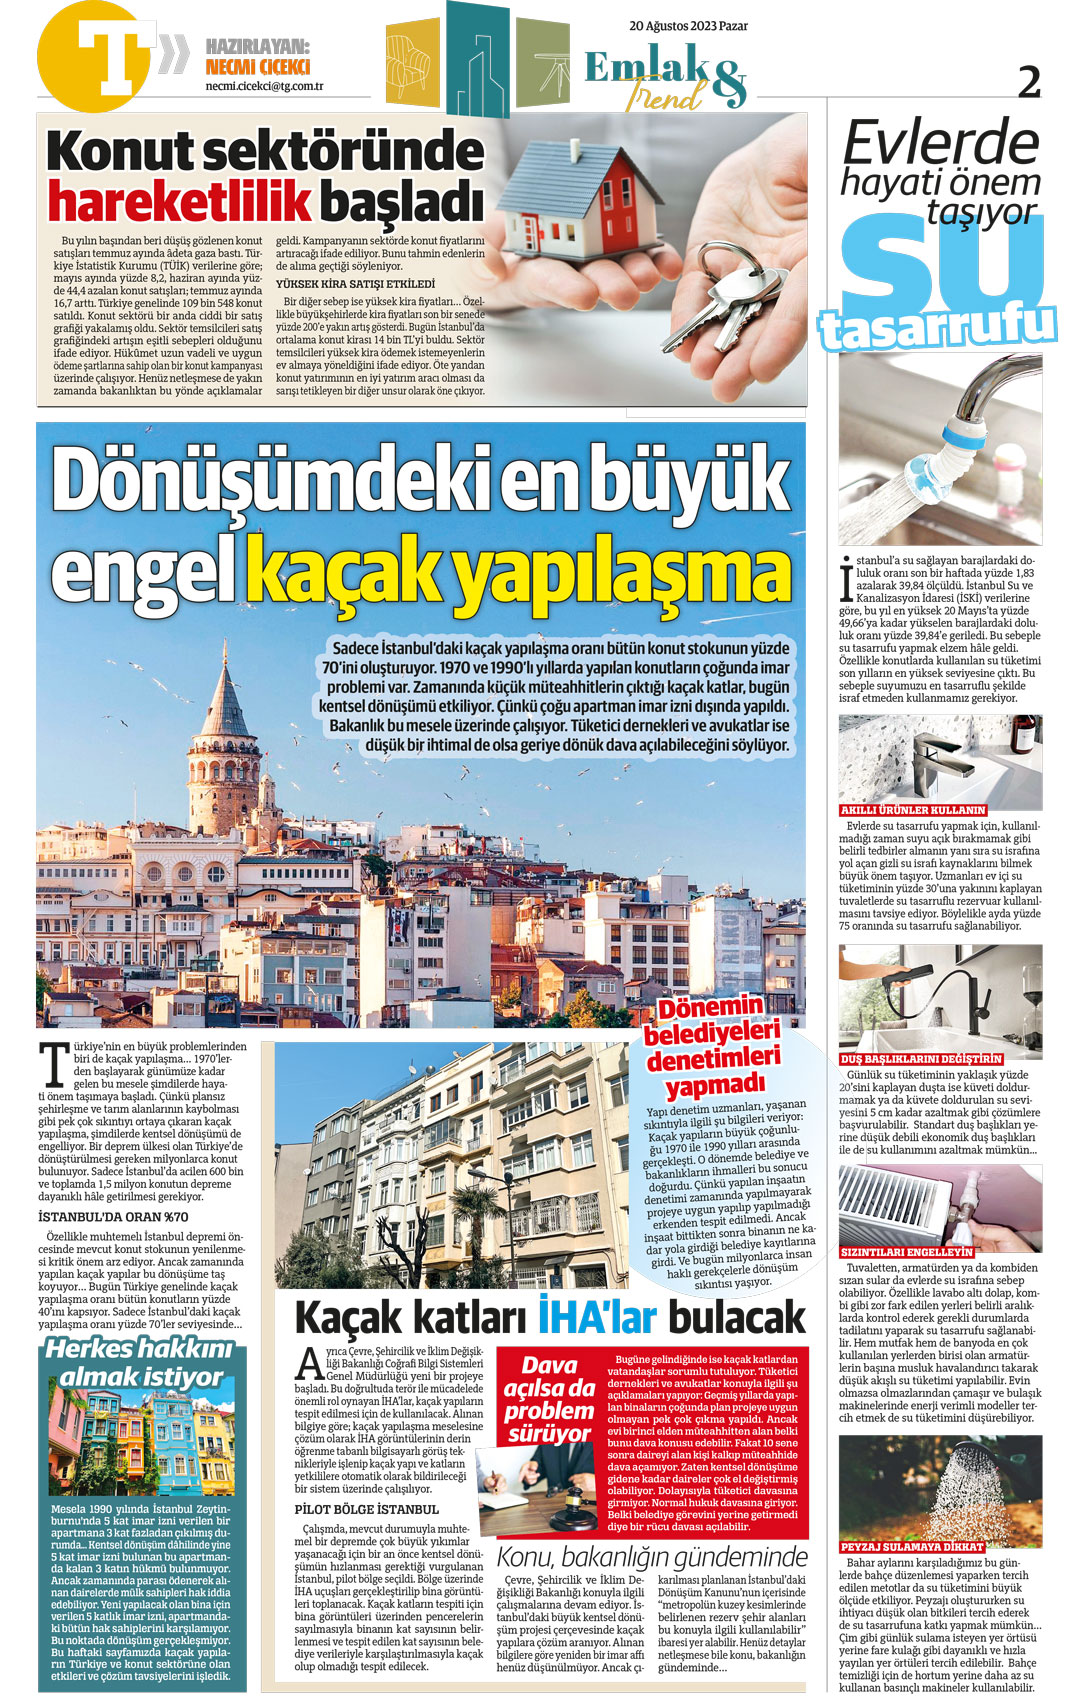 necmi çiçekçi türkiye gazetesi emlak trend sayfası